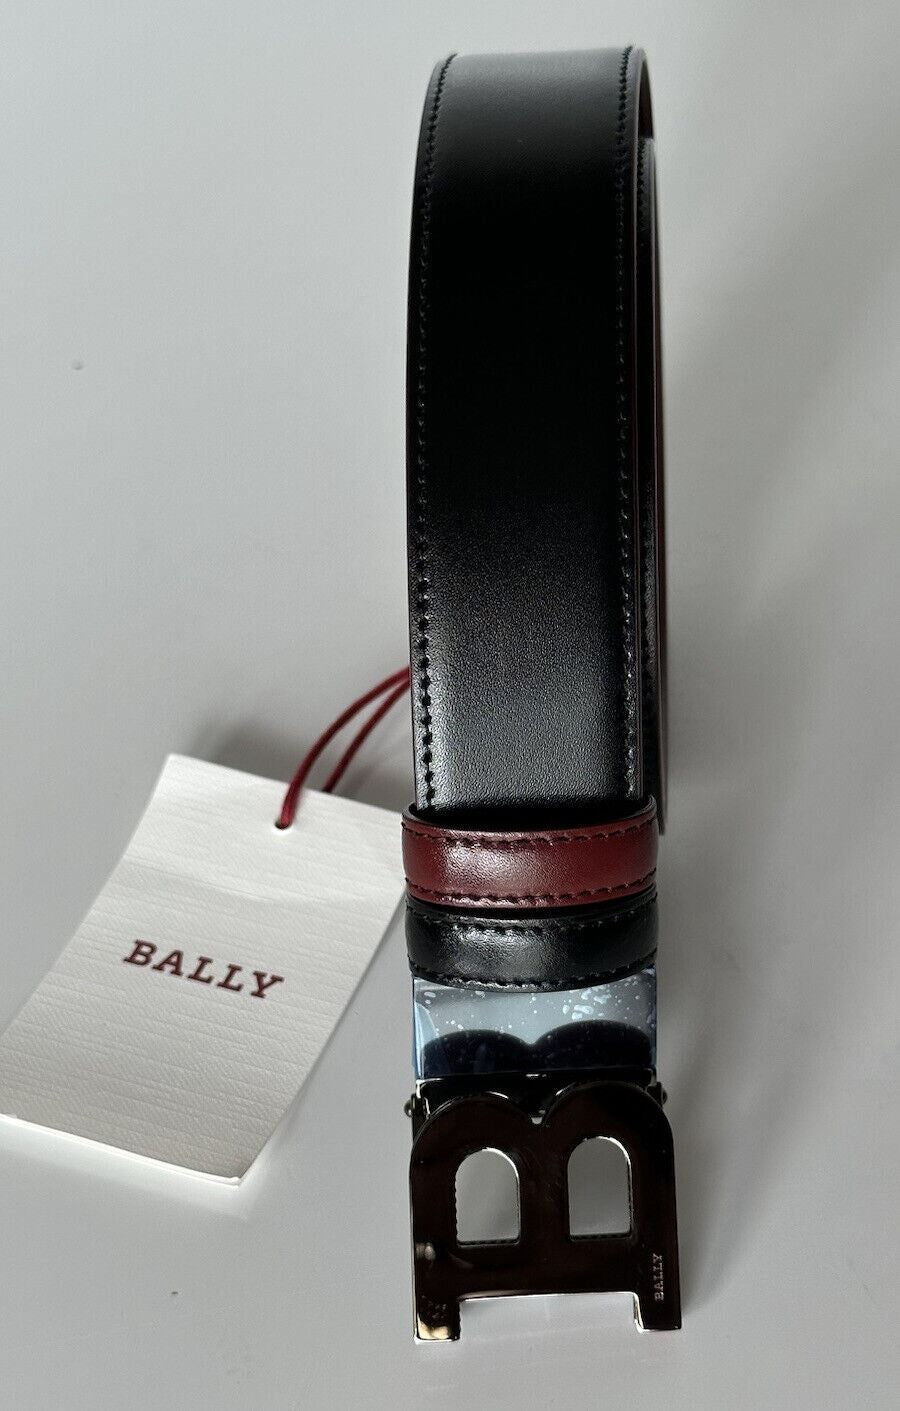 Neu mit Etikett: 450 $ Bally Herrengürtel mit doppelseitiger B-Schnalle, Schwarz/Rot, 44/110 IT 6301461001 